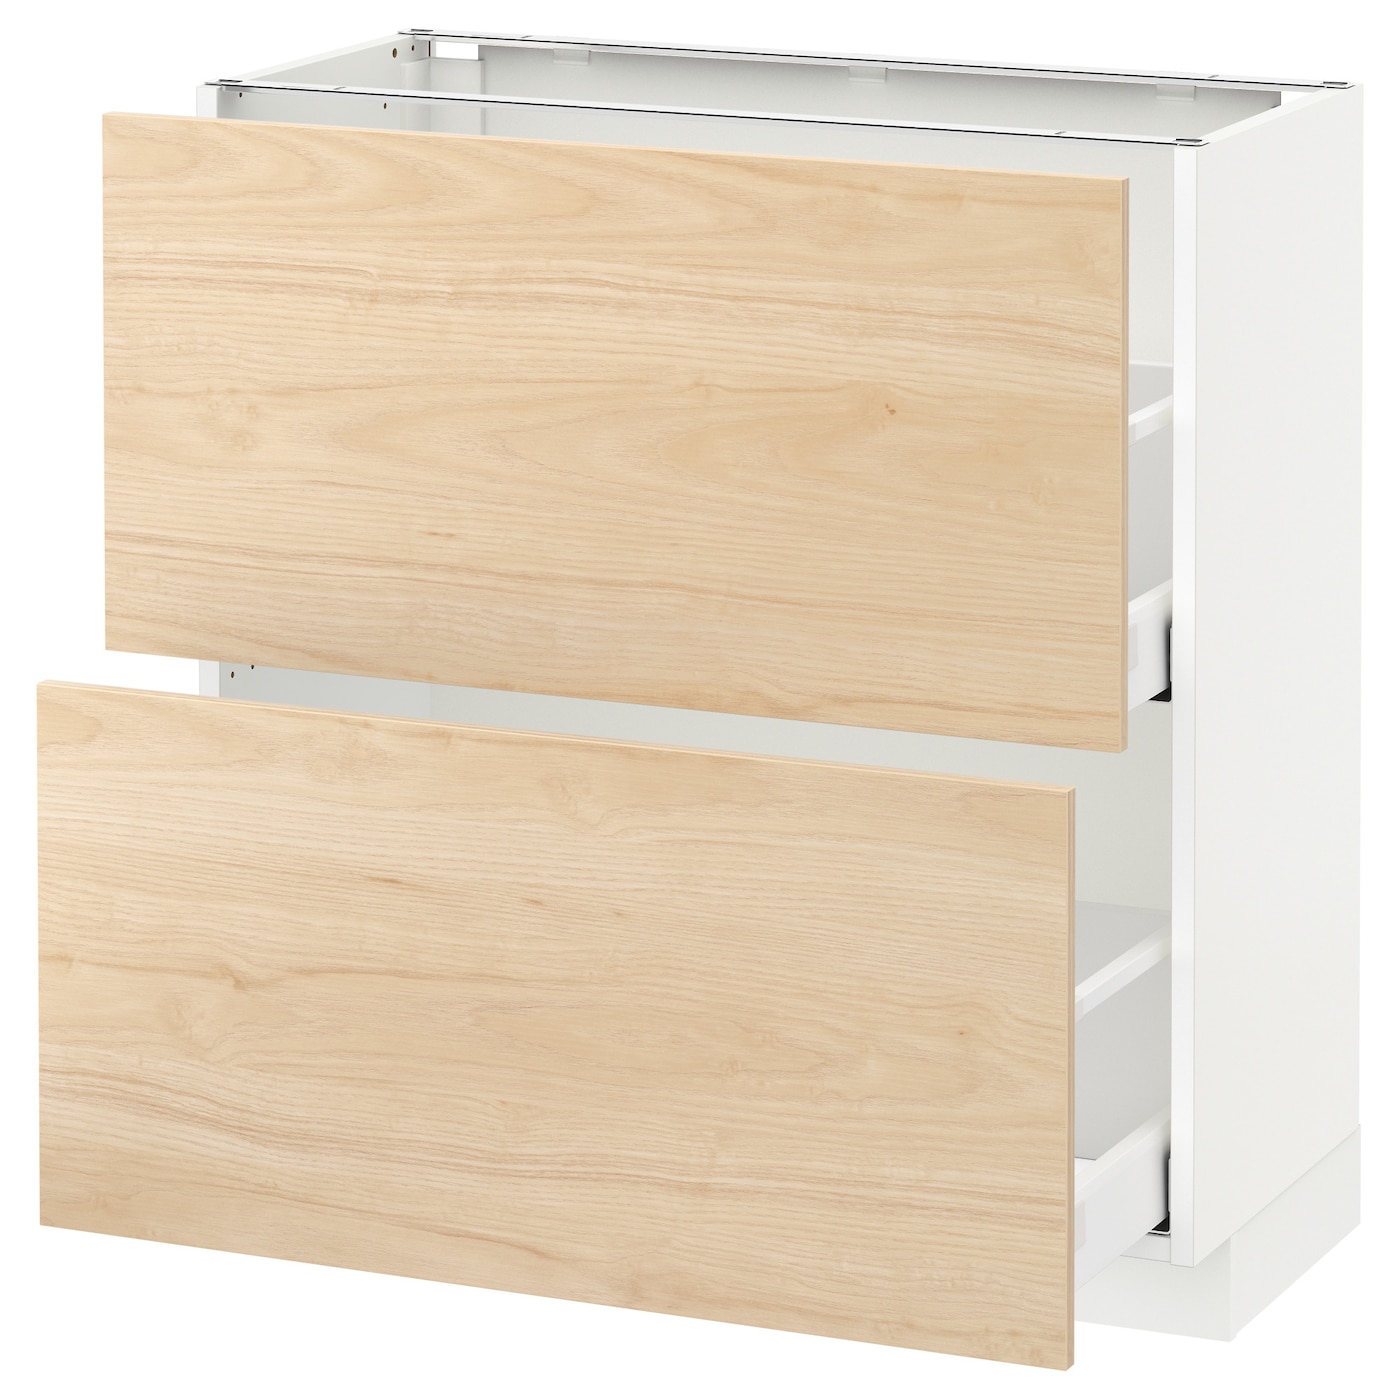 Напольный шкаф - IKEA METOD MAXIMERA, 88x39x80см, белый/светлый ясень, МЕТОД МАКСИМЕРА ИКЕА